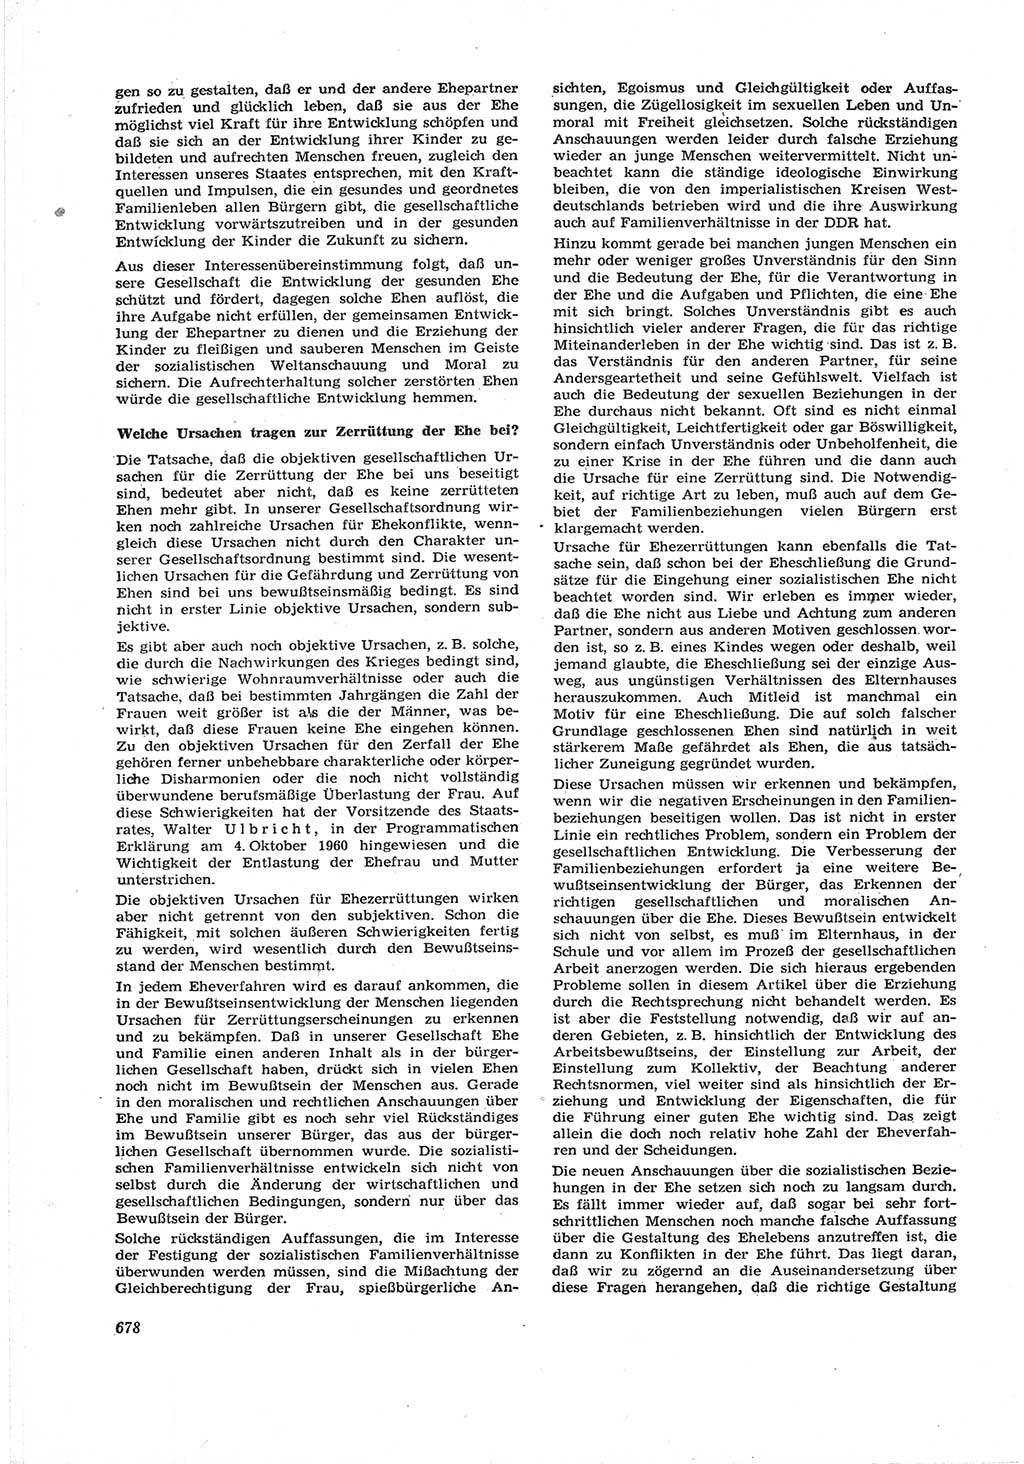 Neue Justiz (NJ), Zeitschrift für Recht und Rechtswissenschaft [Deutsche Demokratische Republik (DDR)], 17. Jahrgang 1963, Seite 678 (NJ DDR 1963, S. 678)